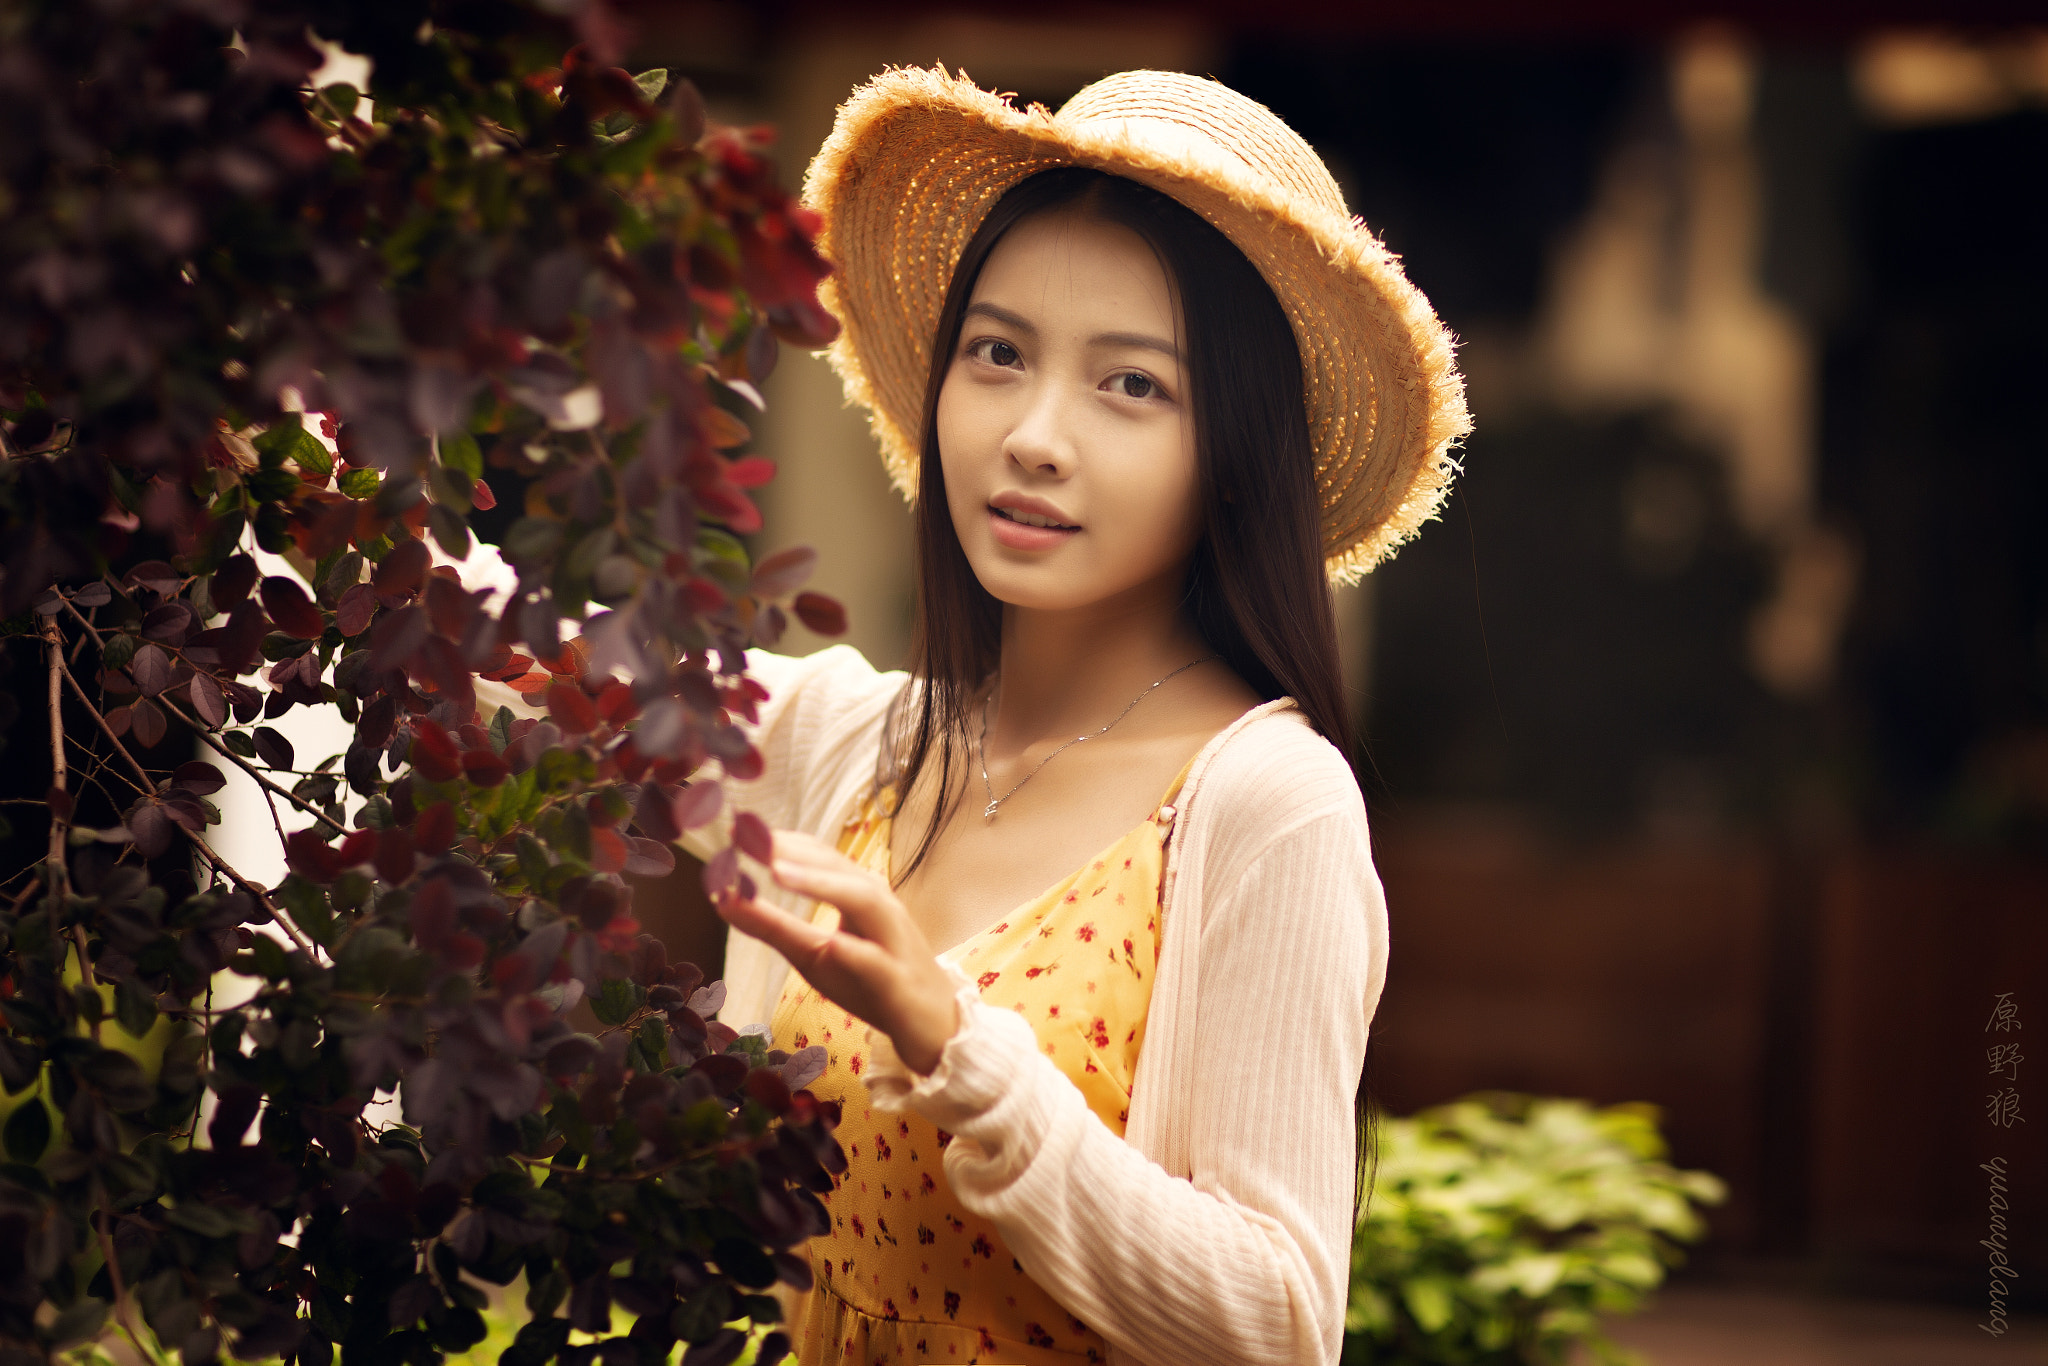 Yuan Yelang Women Asian Hat Brunette Smiling Plants Warm Casual 2048x1366